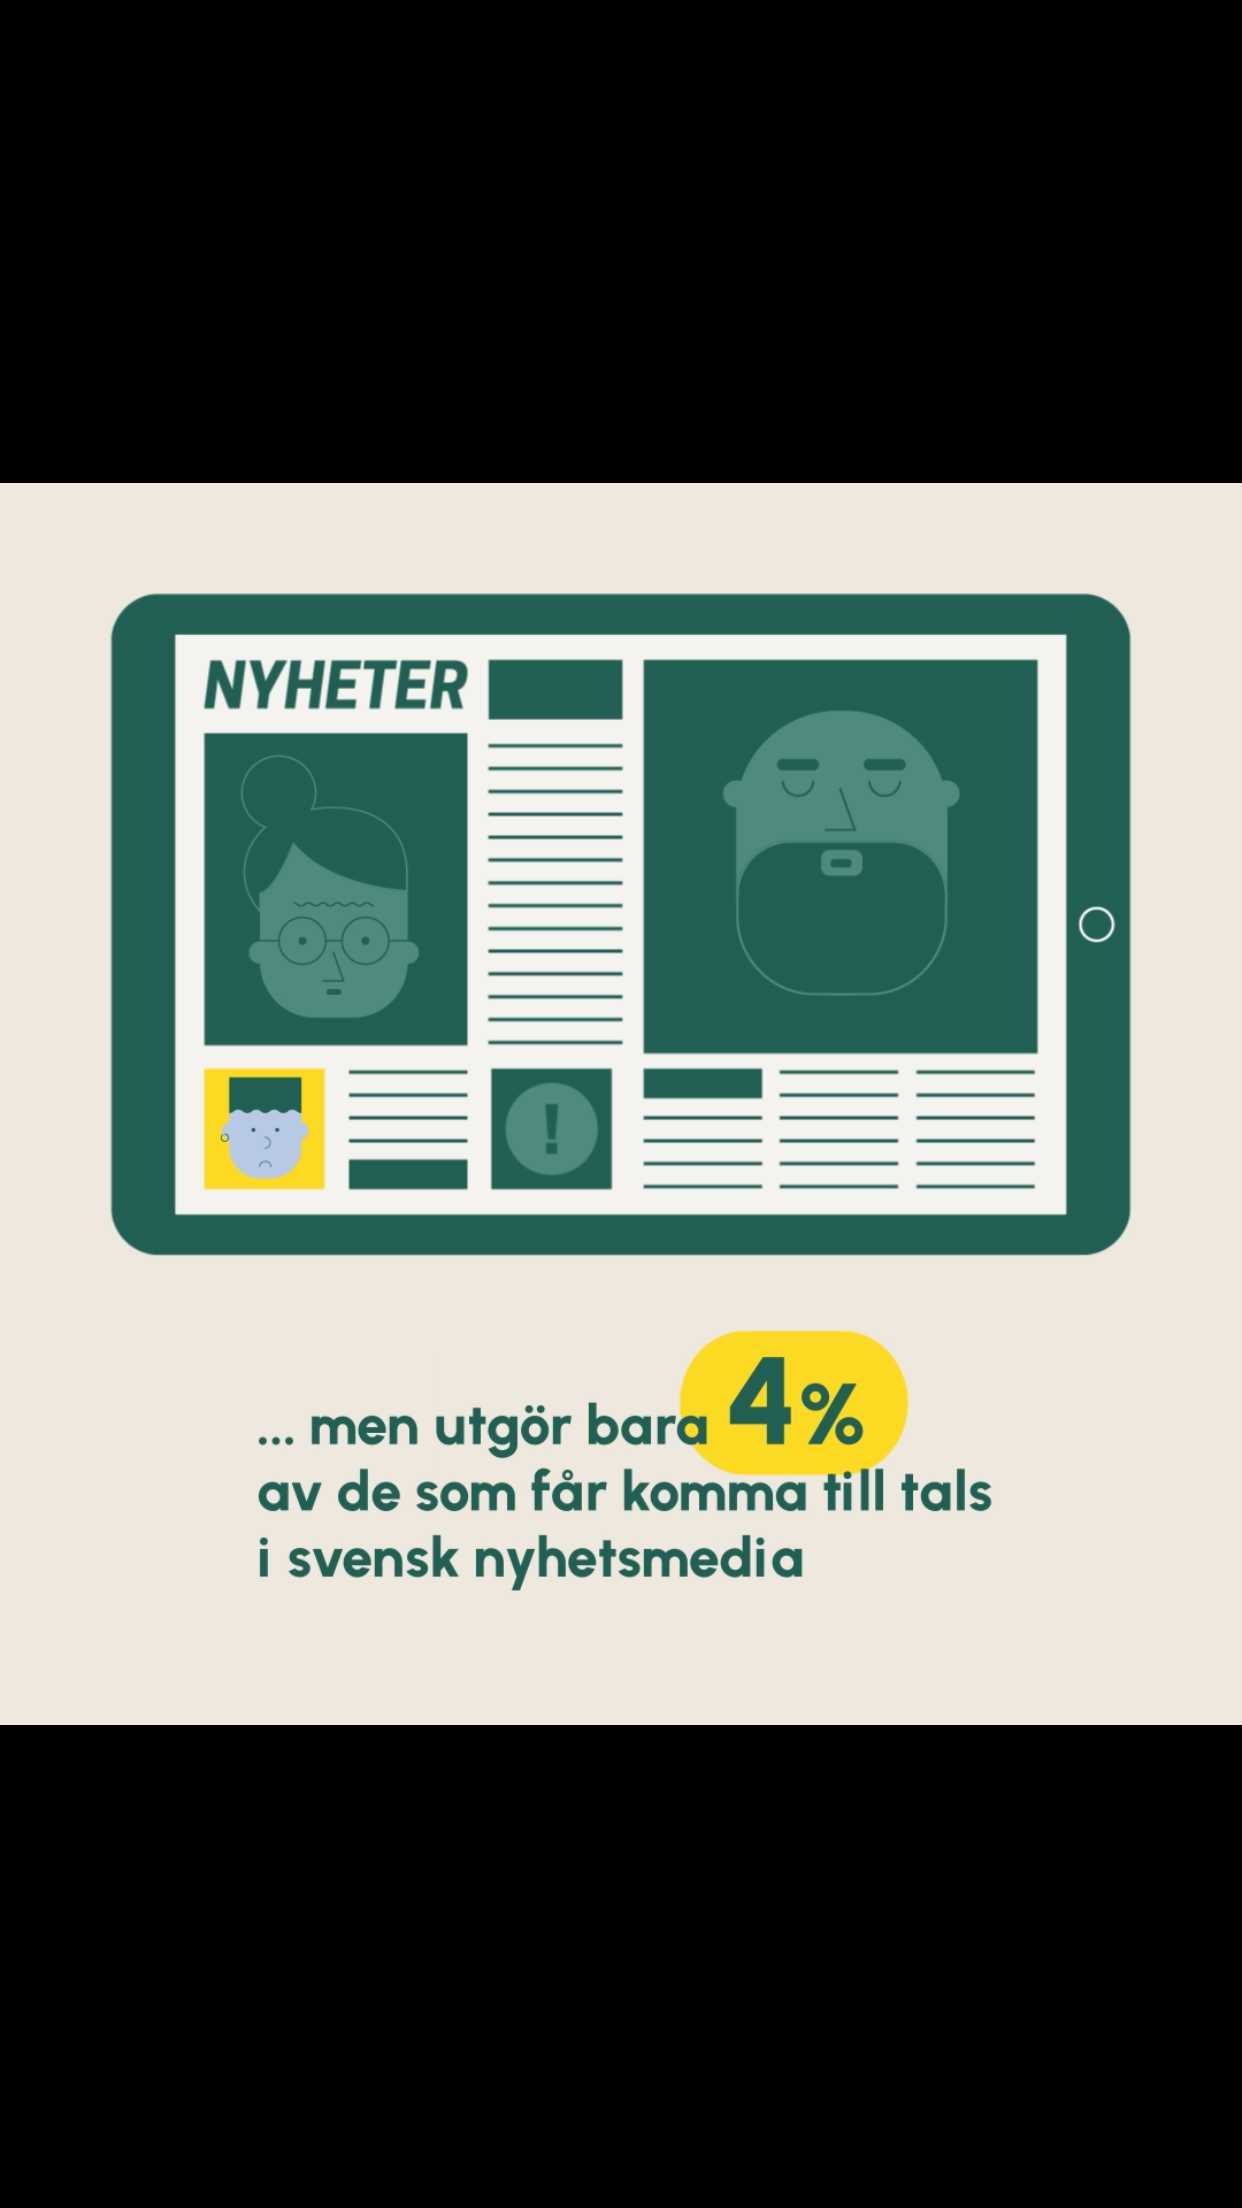 UNGA PERSONER UTGÖR BARA 4% AV ALLA SOM FÅR KOMMA TILL TALS I NYHETSMEDIA

Mediehuset Fanzingo knäcker koden för vad som får bli nyheter i en ny unik granskning av riksmedia, Nyhetskoden 

30% av befolkningen är under 25 år, men utgör bara 4% av alla som får komma till tals i intervjuer och reportage i svensk nyhetsmedia.

Unga omnämns i 7% av nyheterna, antingen som grupp eller som individer, och då handlar 44% av de inslagen om någon typ av brott. Unga framställs alltså ofta som antingen brottsoffer eller förövare. Hela 64% av brottsnyheter involverande unga handlade om dödligt våld, jämfört med att 28% av alla brottsnyheter handlar om detta. Även vålds- och sexualbrott är vanligare bland brottsnyheter som handlar om unga. 

Kriminolog Jenny Forsman säger “Detta kan tolkas som en betydlig överrepresentation då ca 90% av det dödliga våld som rapporterades 2020 drabbade personer över 18 år.” 

Vad tror du detta gör med synen på unga? 
 
Mediehuset Fanzingo har under 2019, 2020 och 2021 analyserat nyhetsinslag från TV4, SVT och SR i syfte att ta reda på vad som får mest plats, och vad som osynliggörs i svensk riksmedia. Idag släpps rapporten Nyhetskoden.